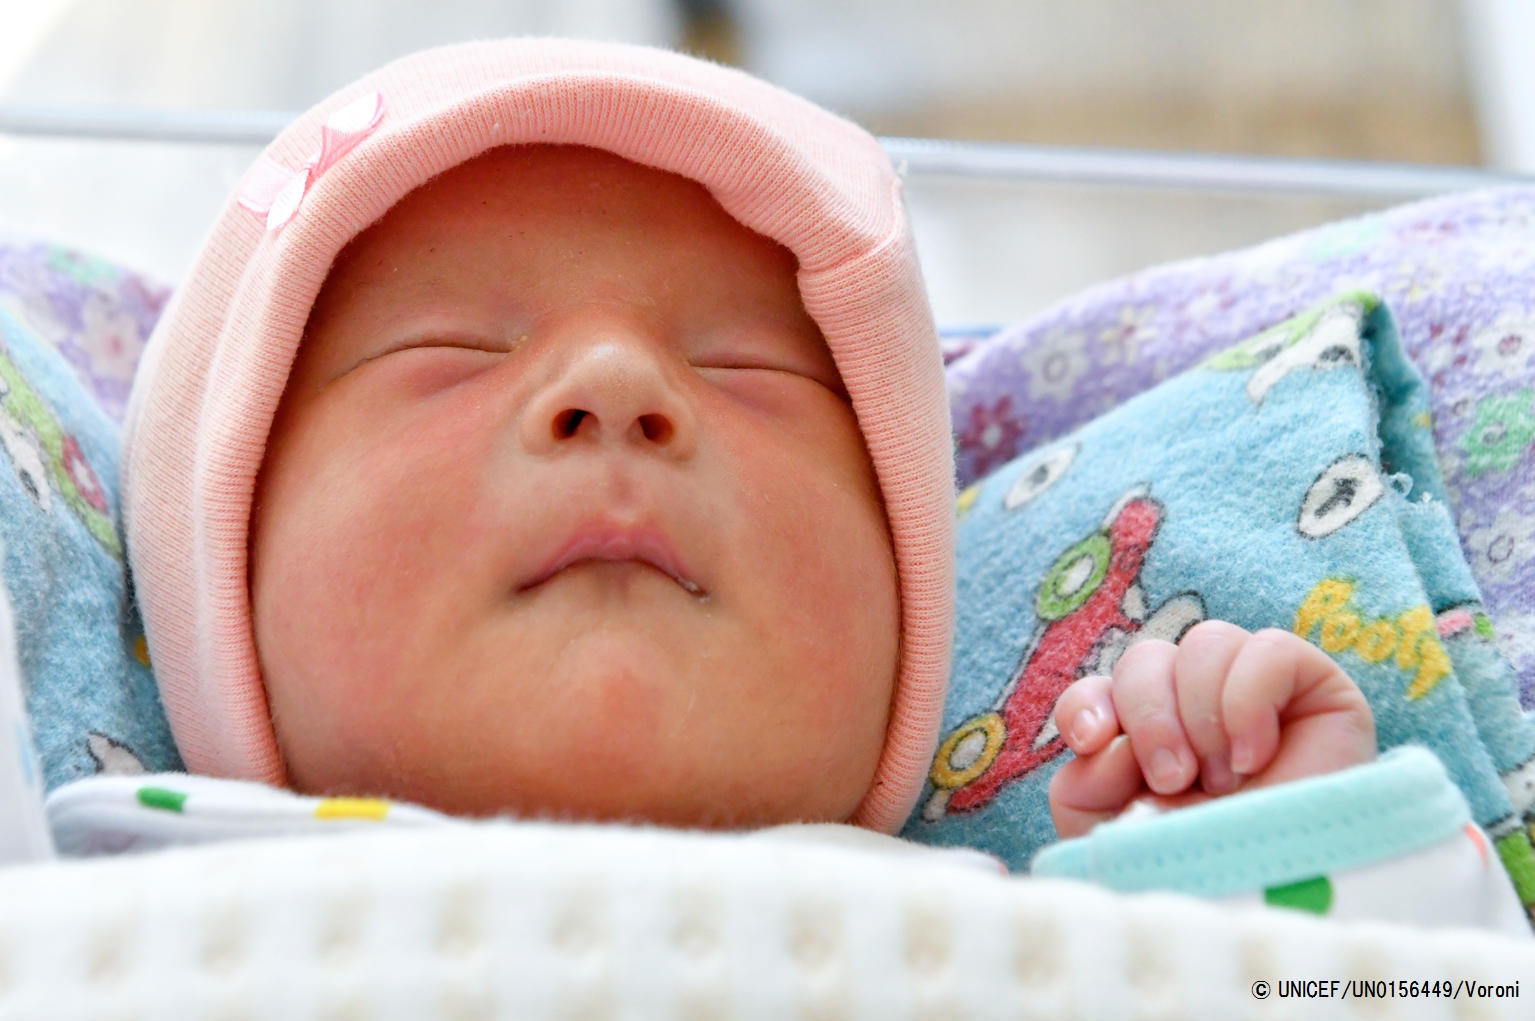 日本は世界で一番赤ちゃんが安全に生まれる国 ユニセフ グローバル キャンペーン Every Child Alive 開始 プレスリリース 公益財団法人日本ユニセフ協会のプレスリリース